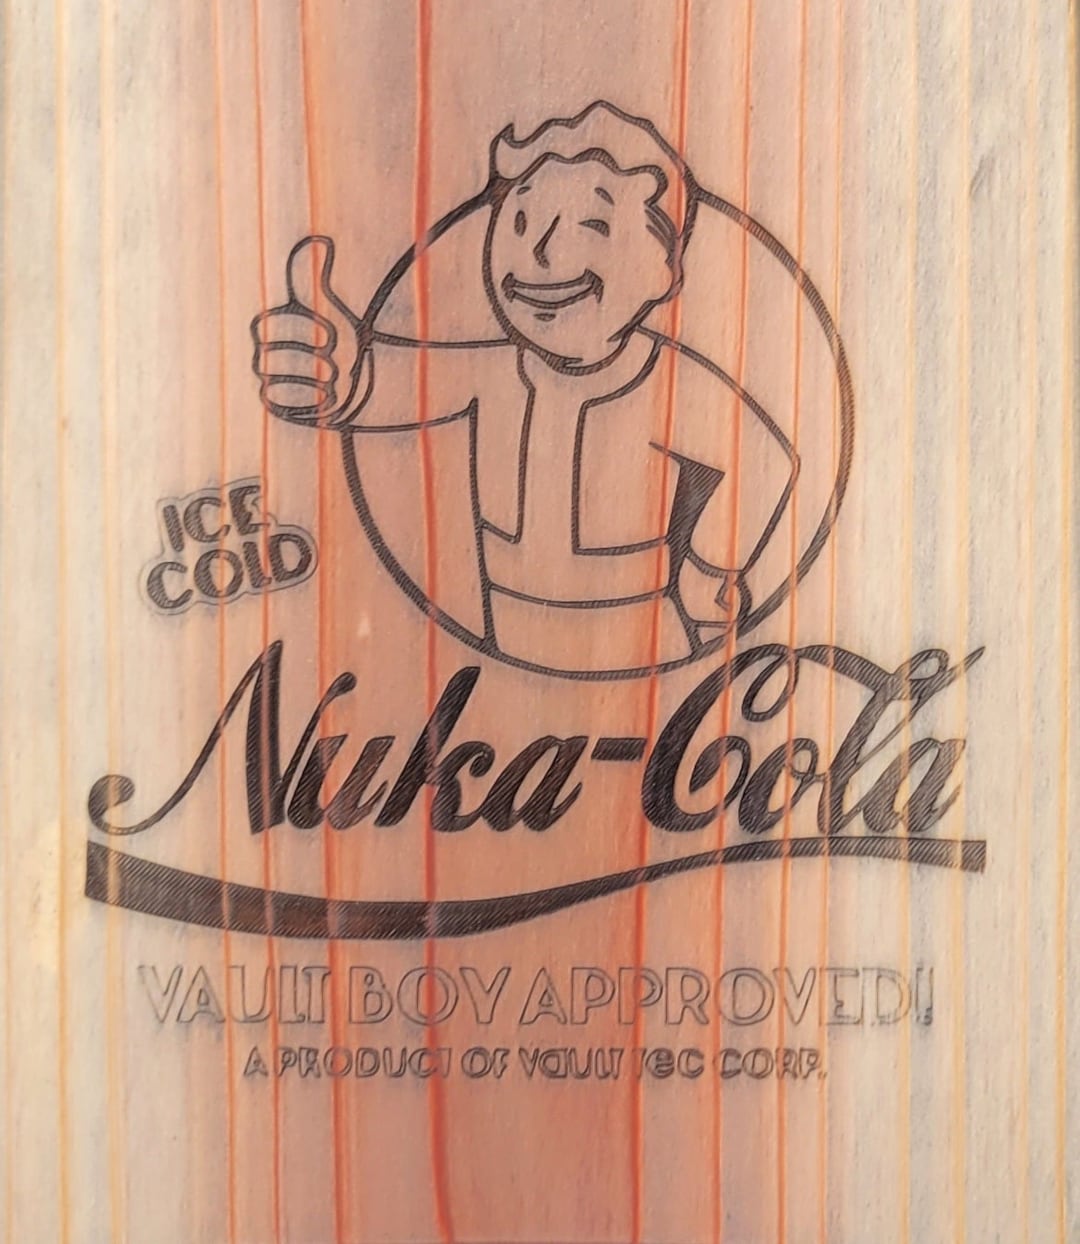 Fallout Nuka Cola Quantum Flaschenöffner, Geschenke und Gadgets für Nerds  online kaufen